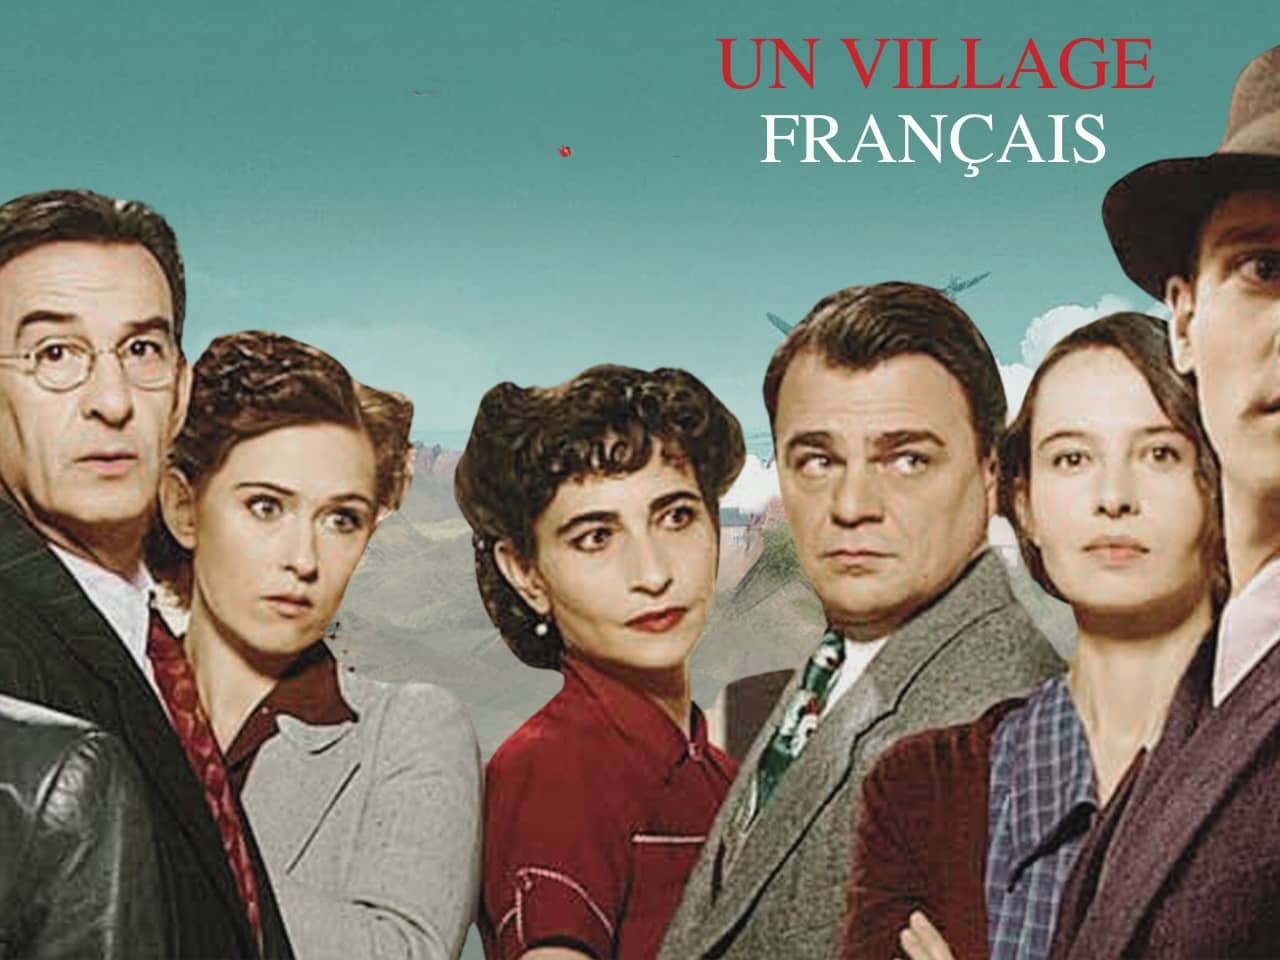 Incroyable ! L'une des meilleures séries françaises de ces 20 dernières années maintenant disponibles gratuitement en streaming